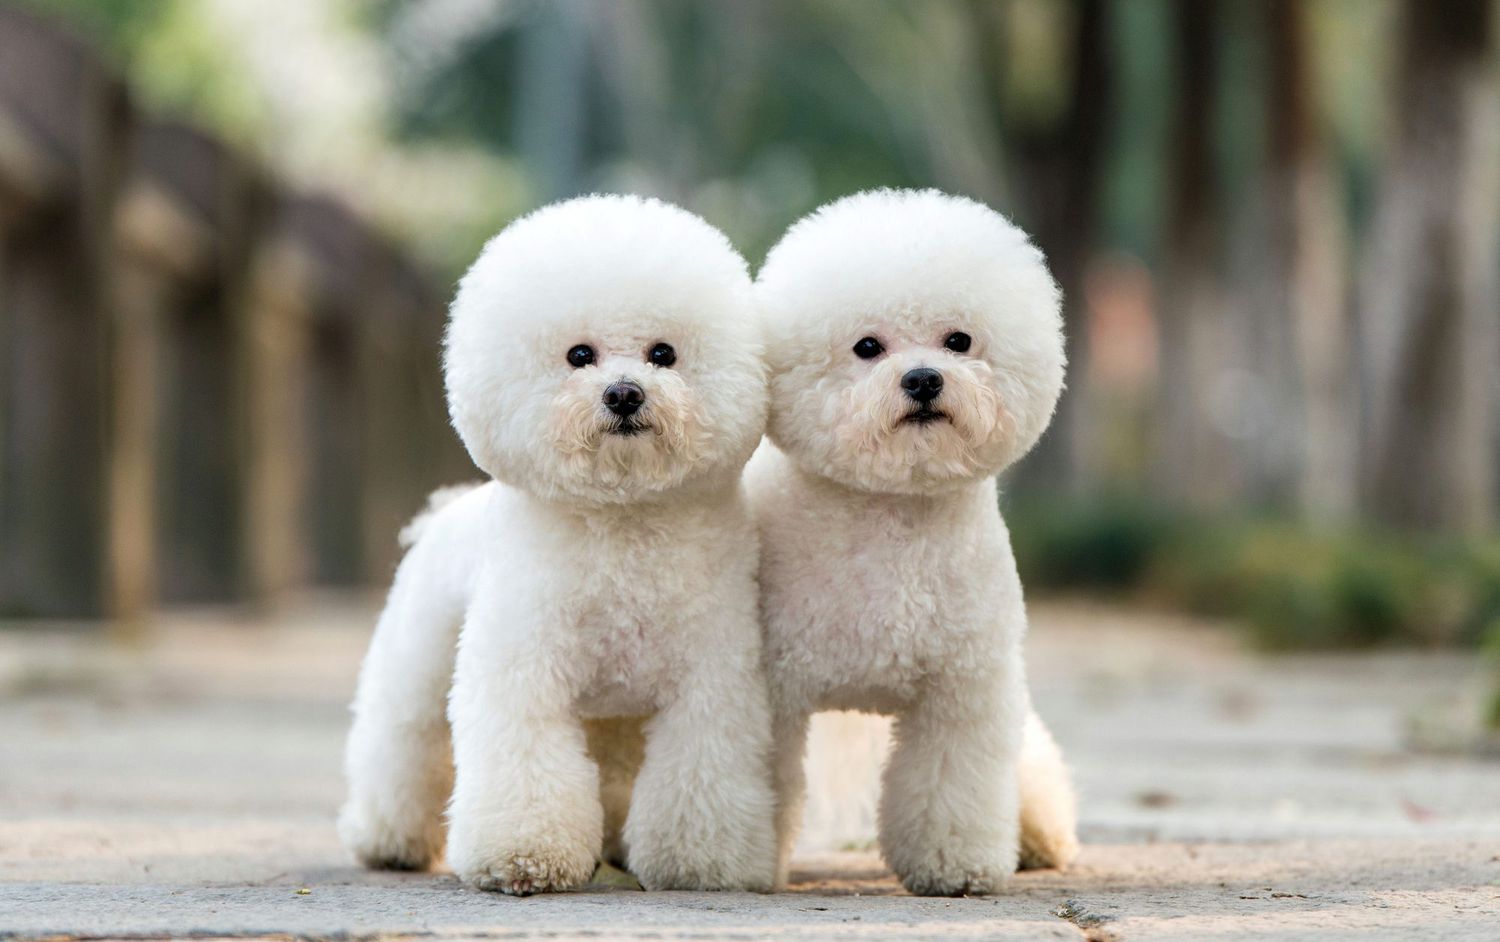 perros hipoalergénicos perfectos para personas con alergias - caniches blancos de corte redondo gemelo